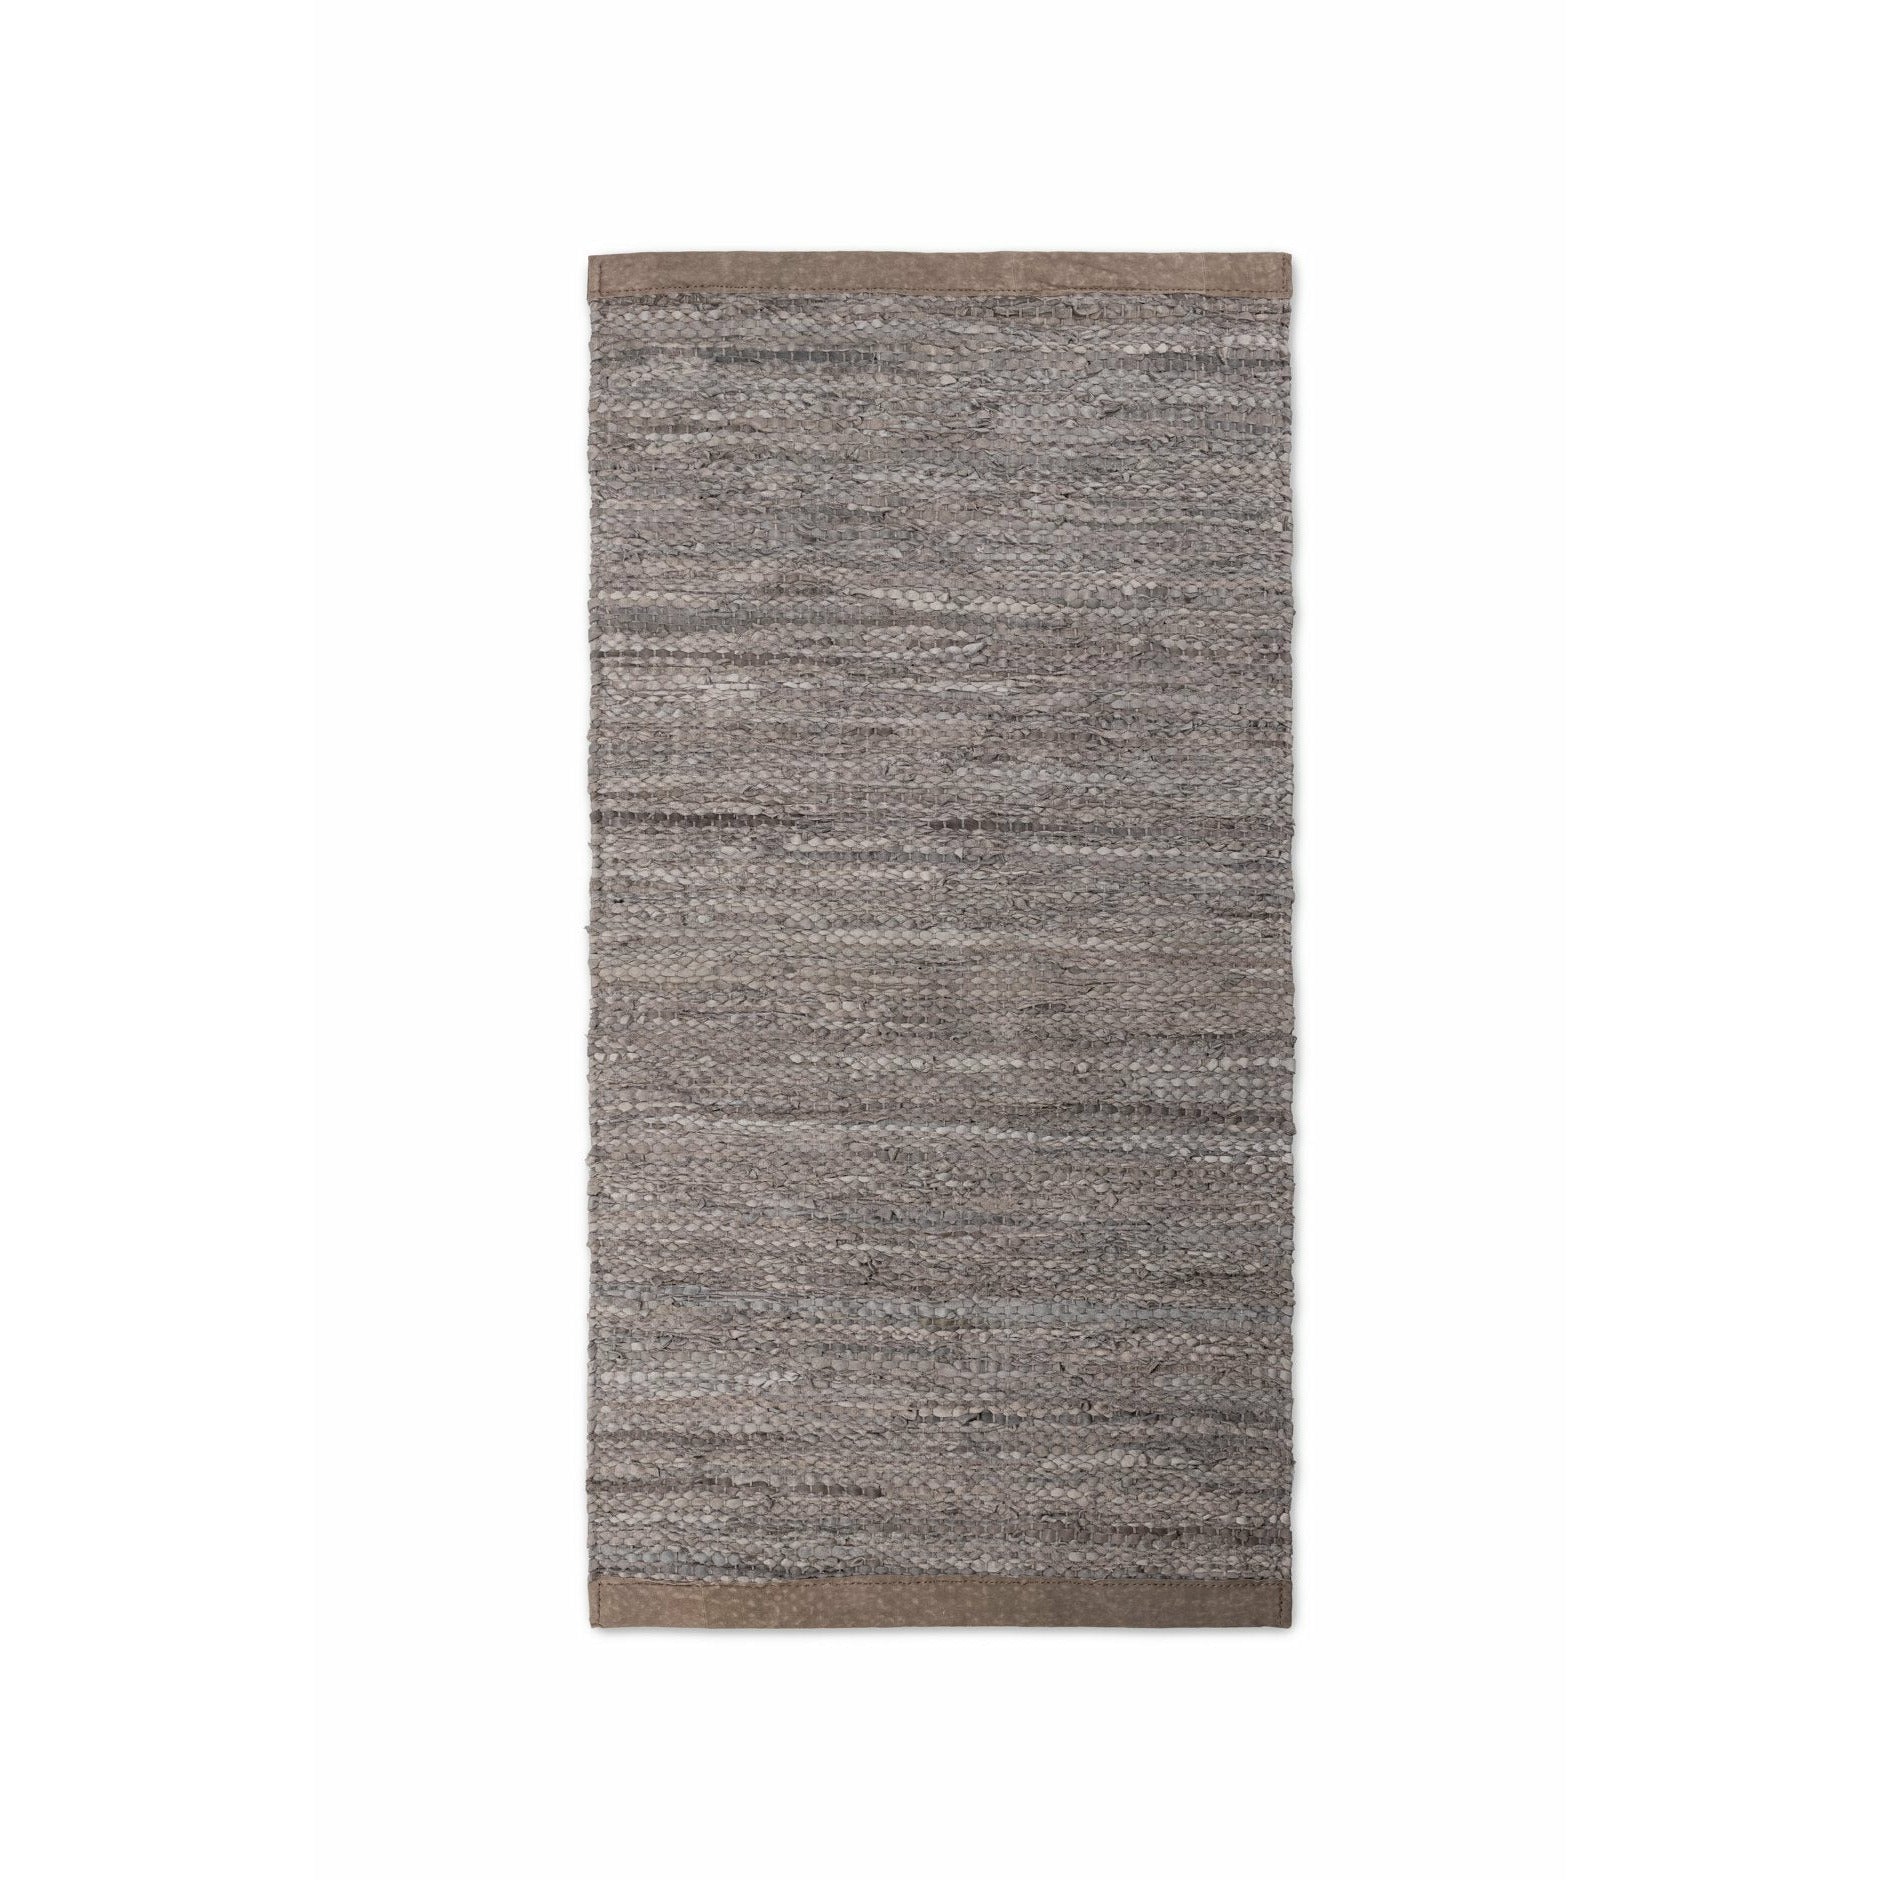 Rug Solid Leder Teppich Holz, 200 X 300 Cm